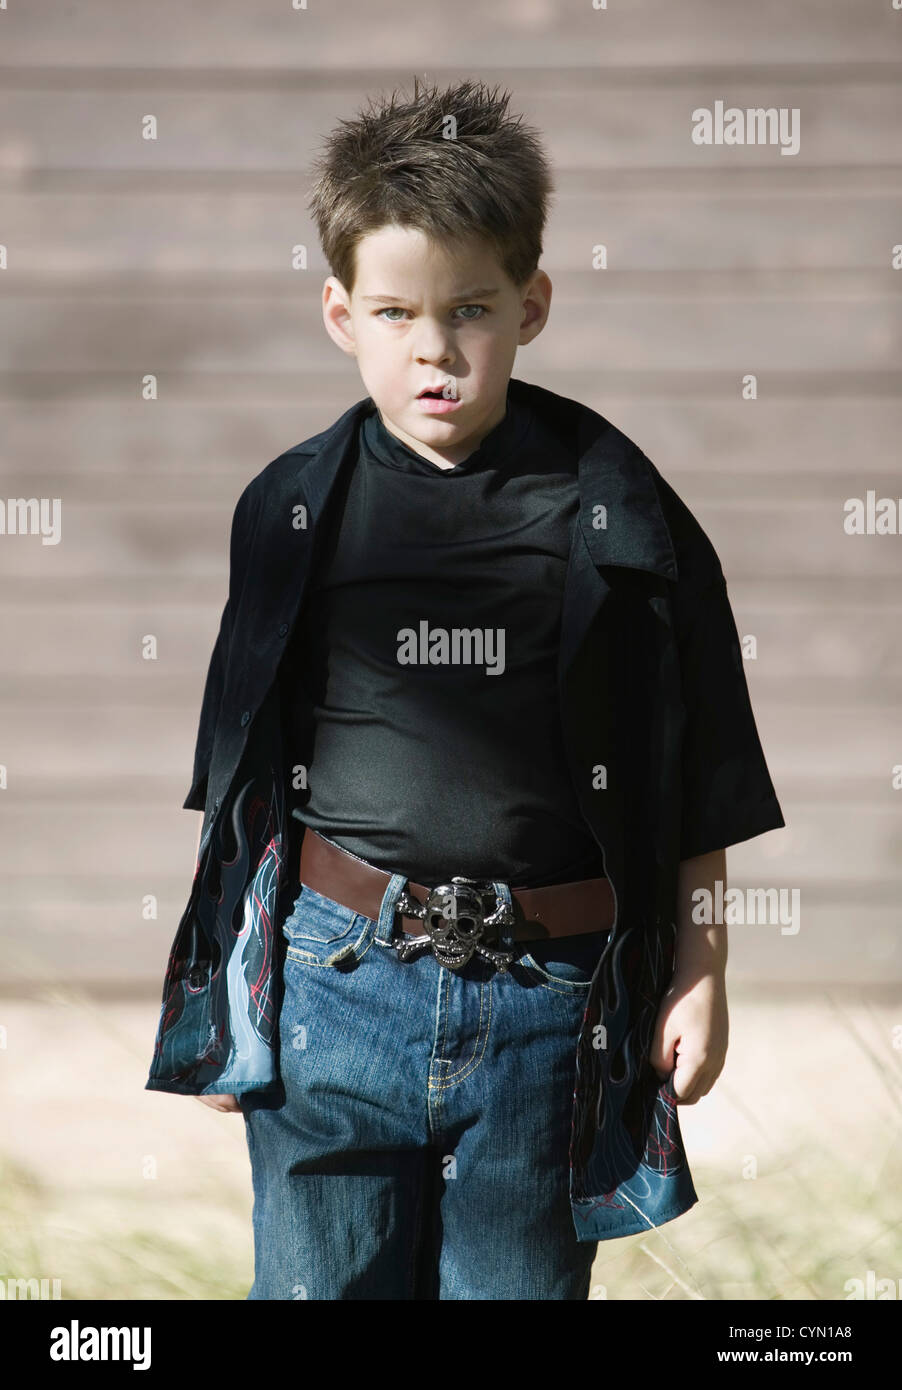 Jeune garçon avec une attitude de défi de porter une chemise noire et une  boucle de ceinture de pirate Photo Stock - Alamy